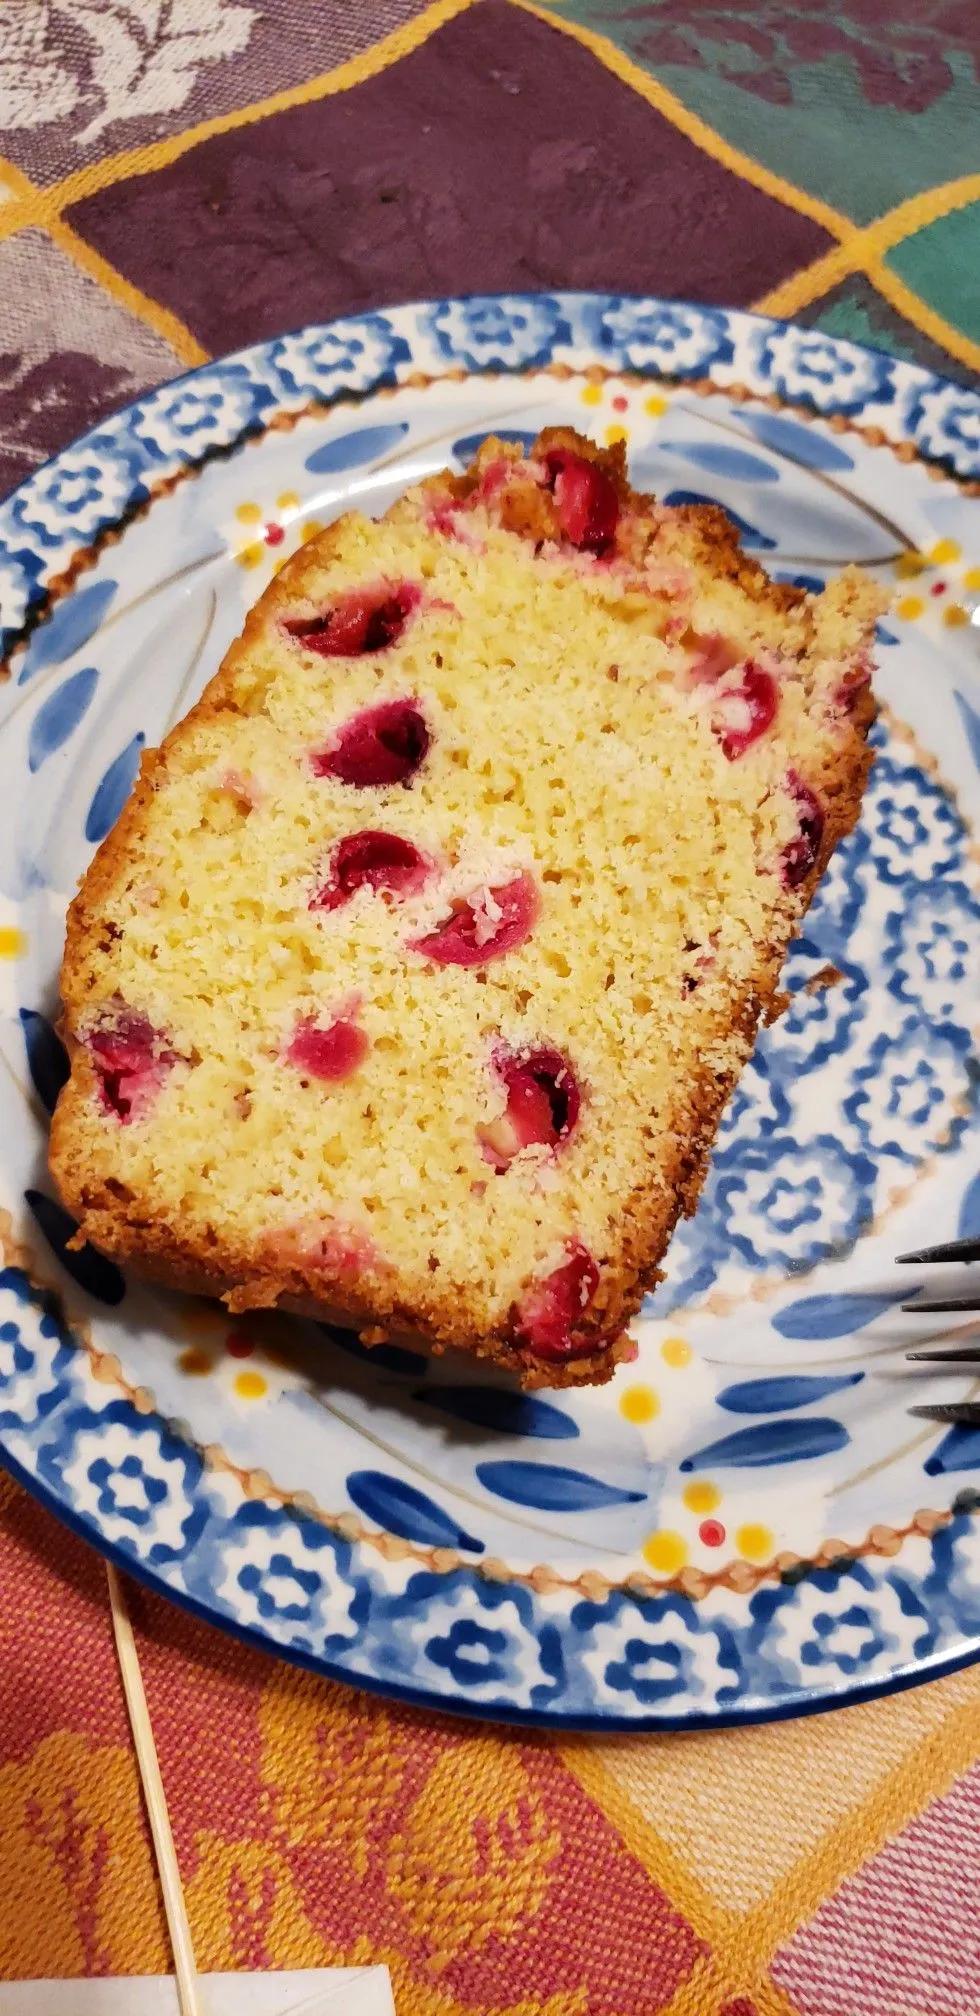 Cranberry orange loaf | Cake cookies, Desserts, Food